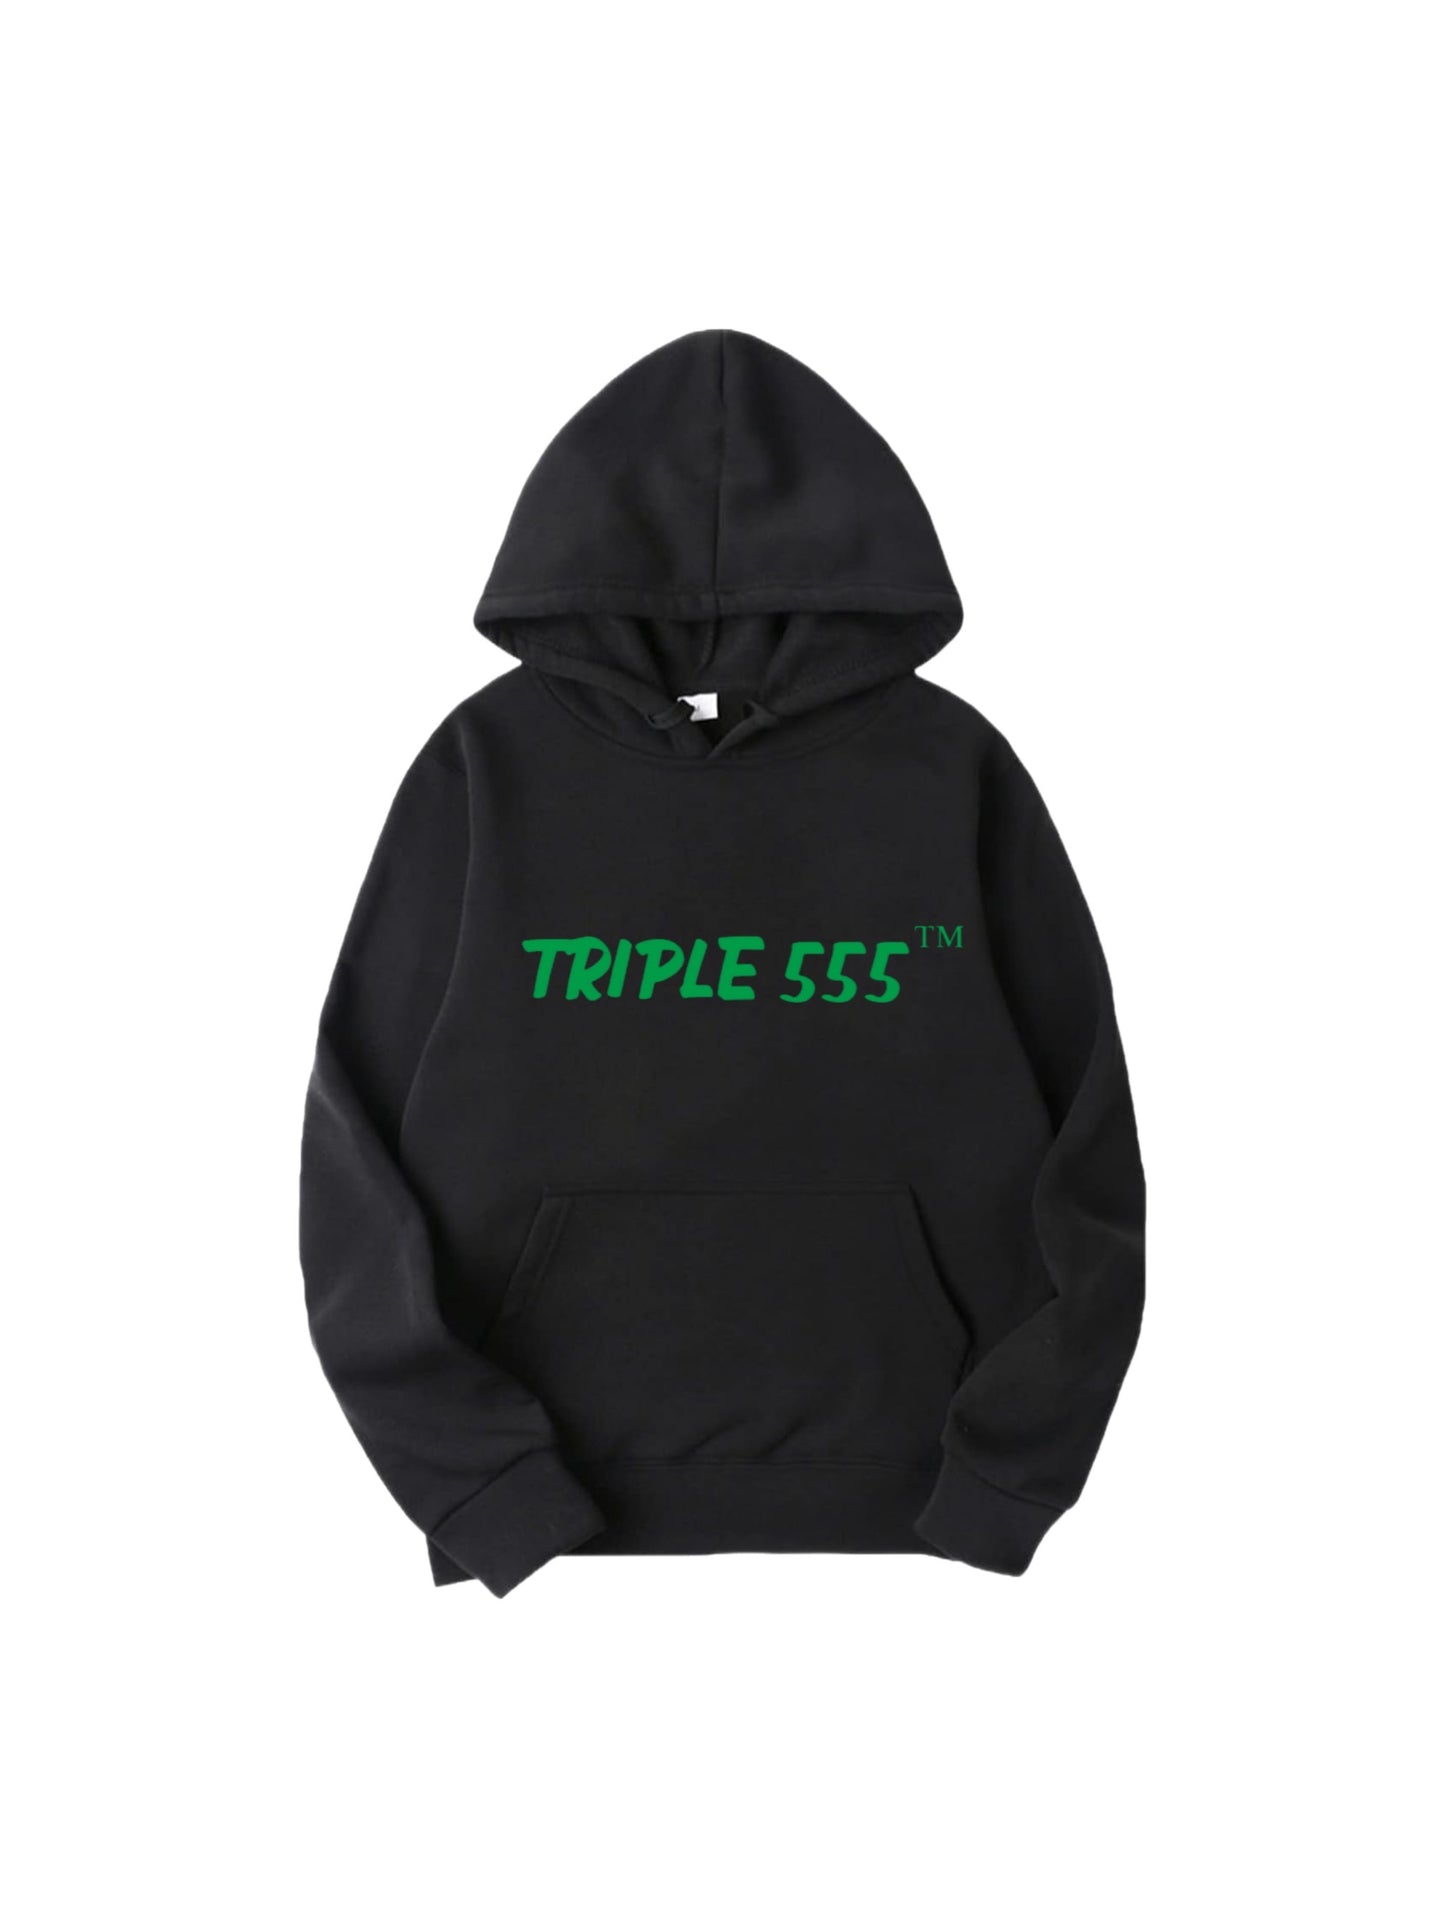 Triple 555 TM Hoodies